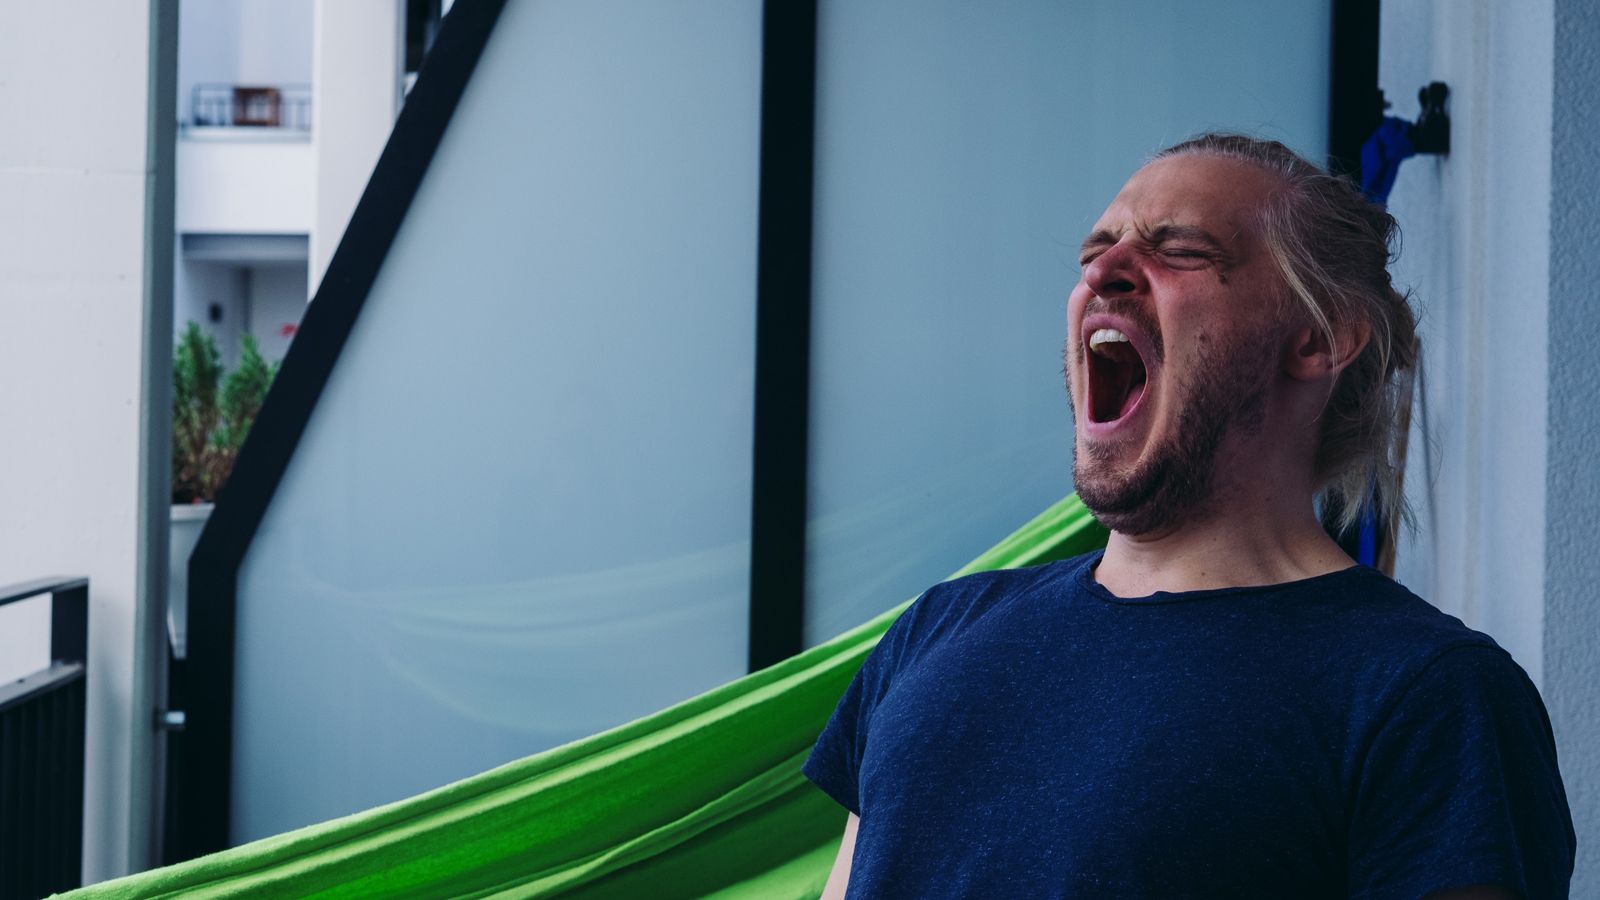 Image of man yawning